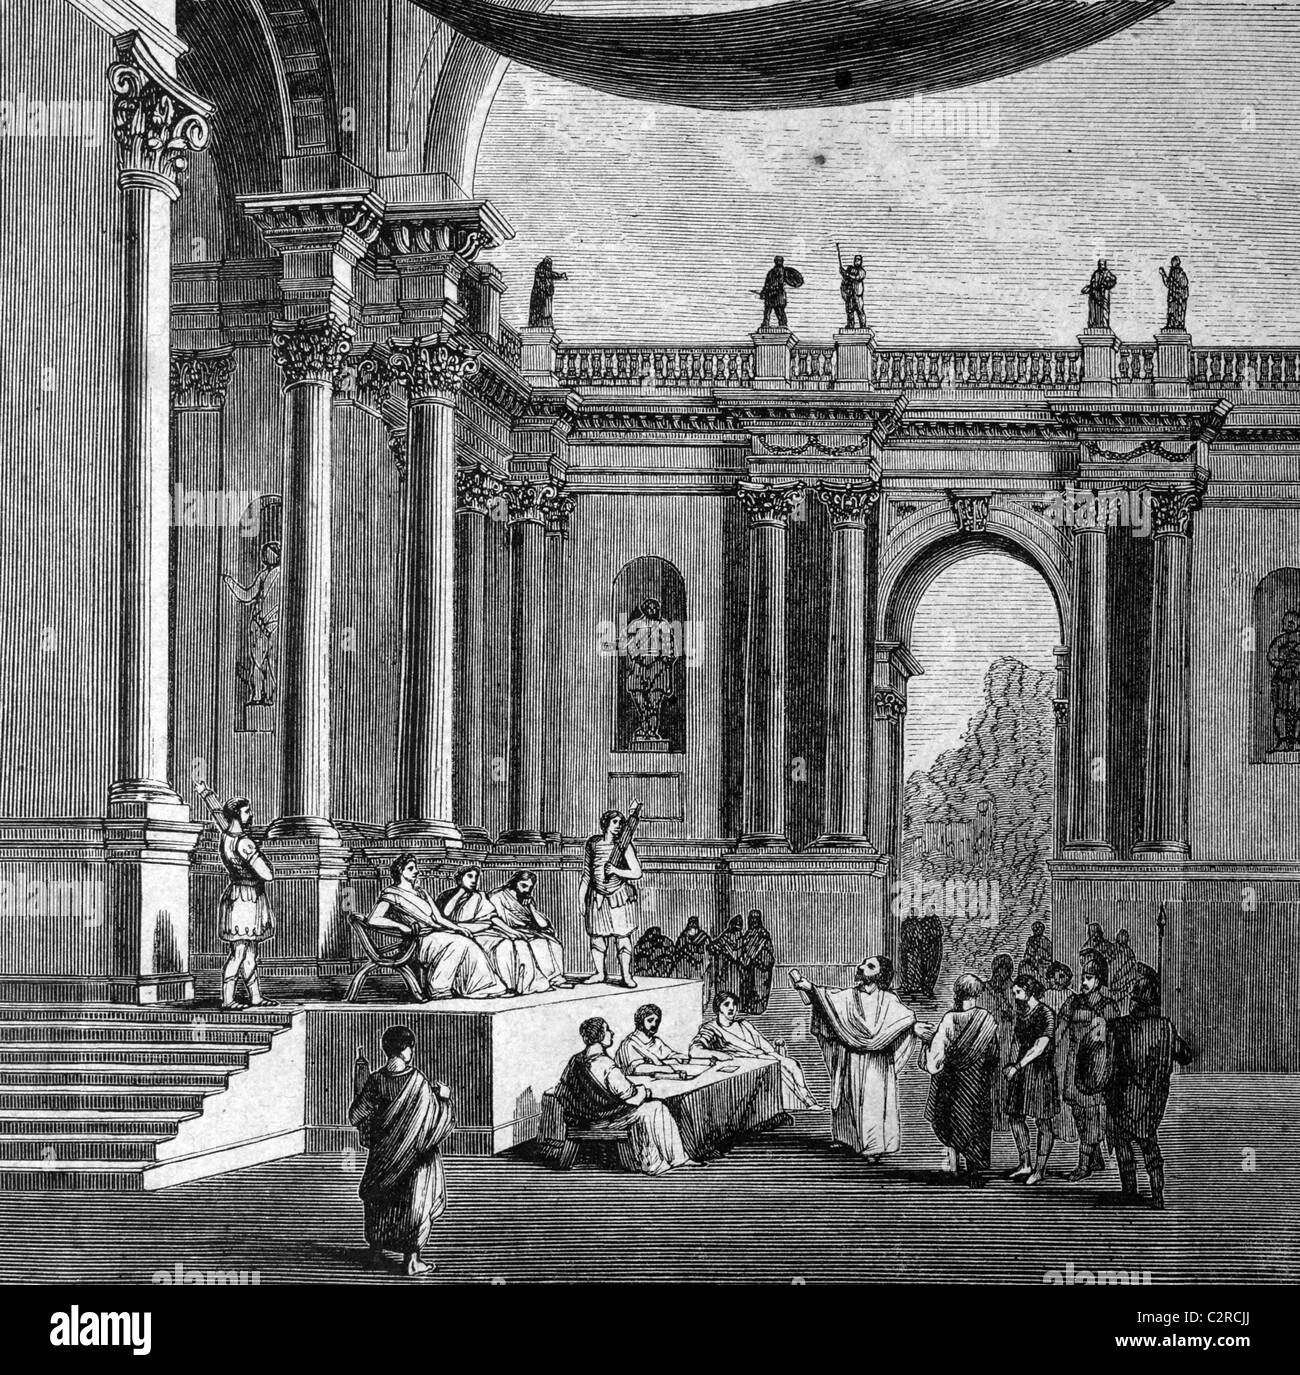 Salón de la justicia en la antigua Roma, Italia, ilustración histórica, circa 1886 Foto de stock